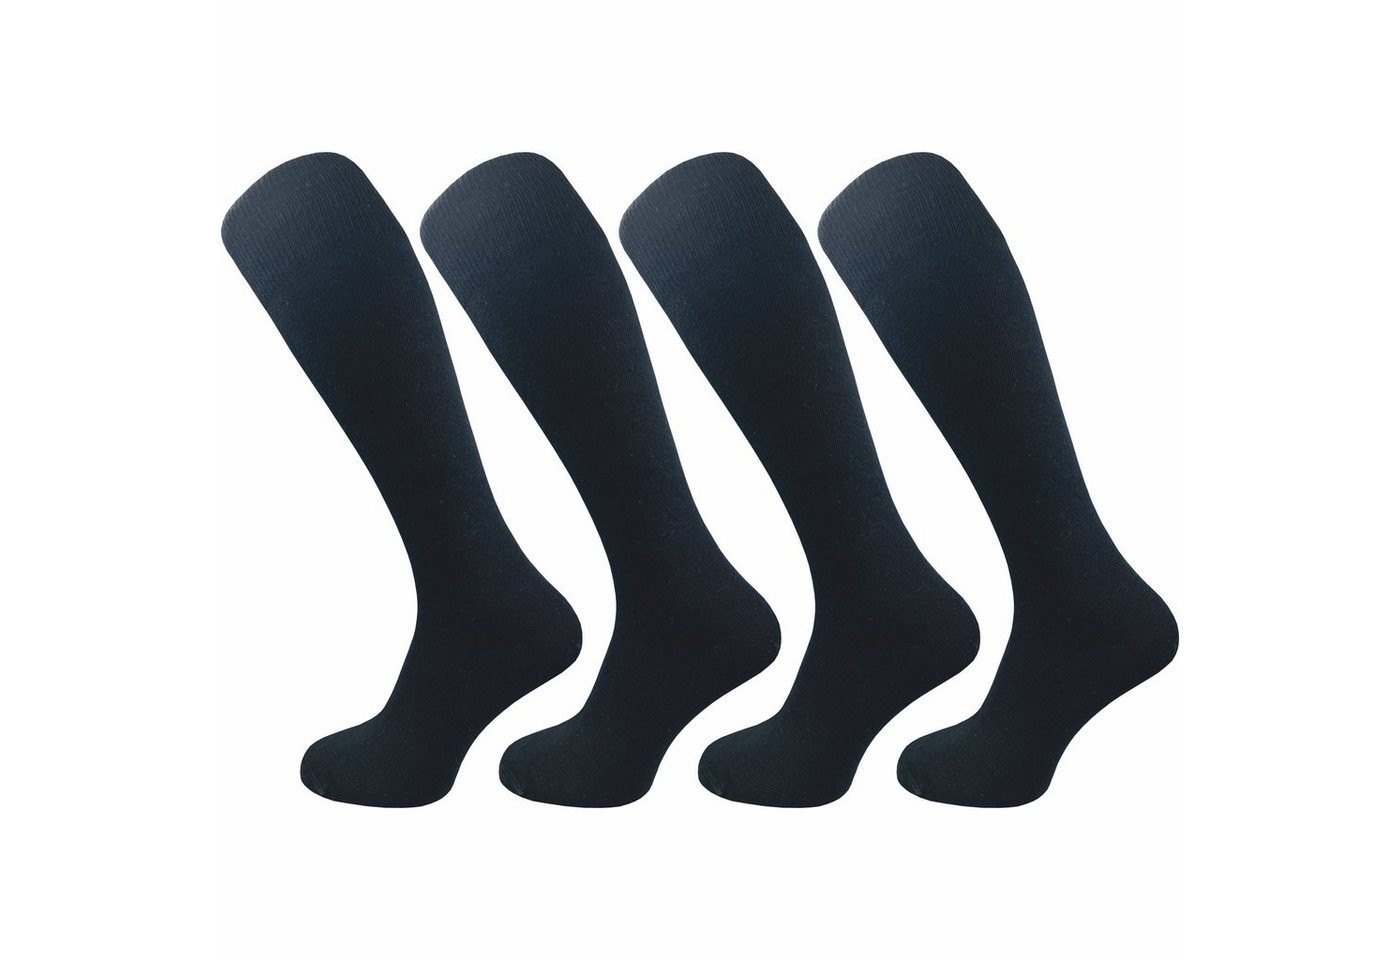 GAWILO Kniestrümpfe für Damen aus Baumwolle - extra weich & ohne drückende Naht (4 Paar) Lange Socken mit speziellem Komfortbund, der nicht einschneidet von GAWILO